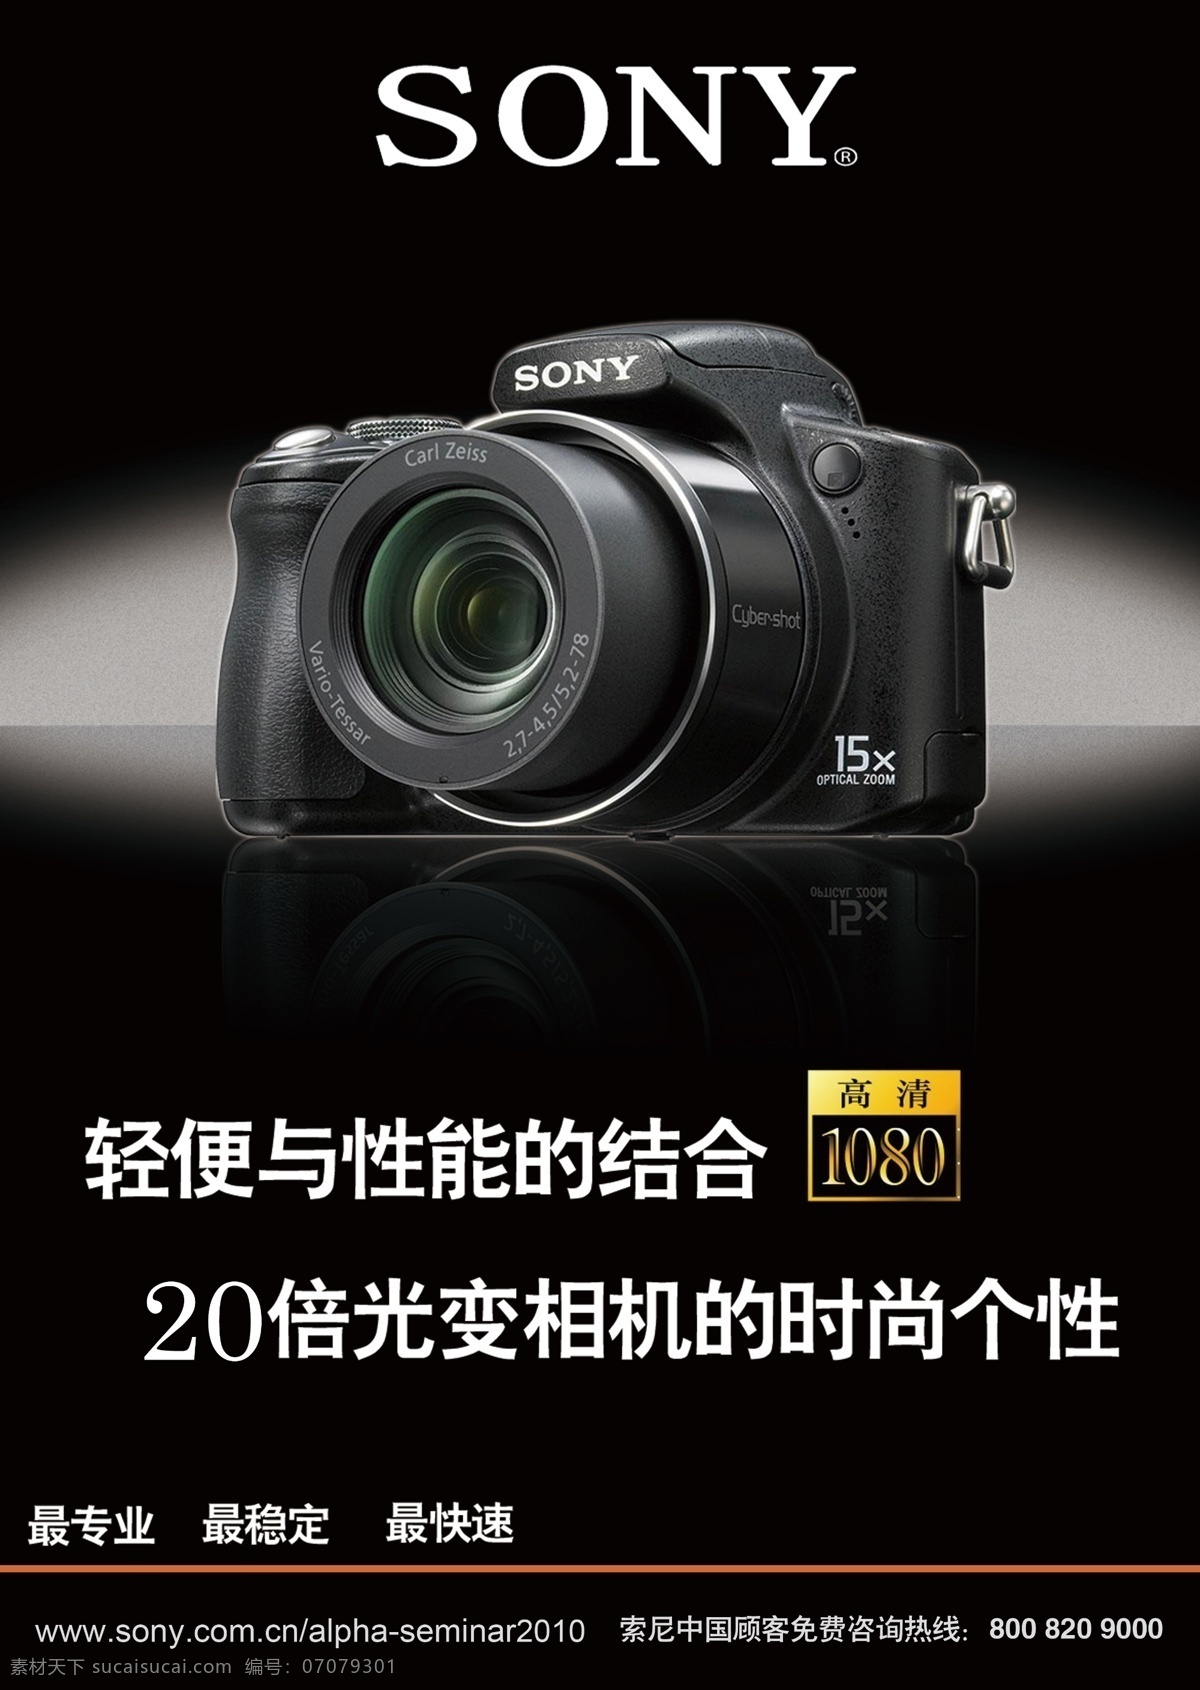 sony相机 相机 sony 索尼 logo 标志 背景 液晶 文字模型 品牌 数码产品 it 分层图 形象广告 源文件 广告设计模板 黑色